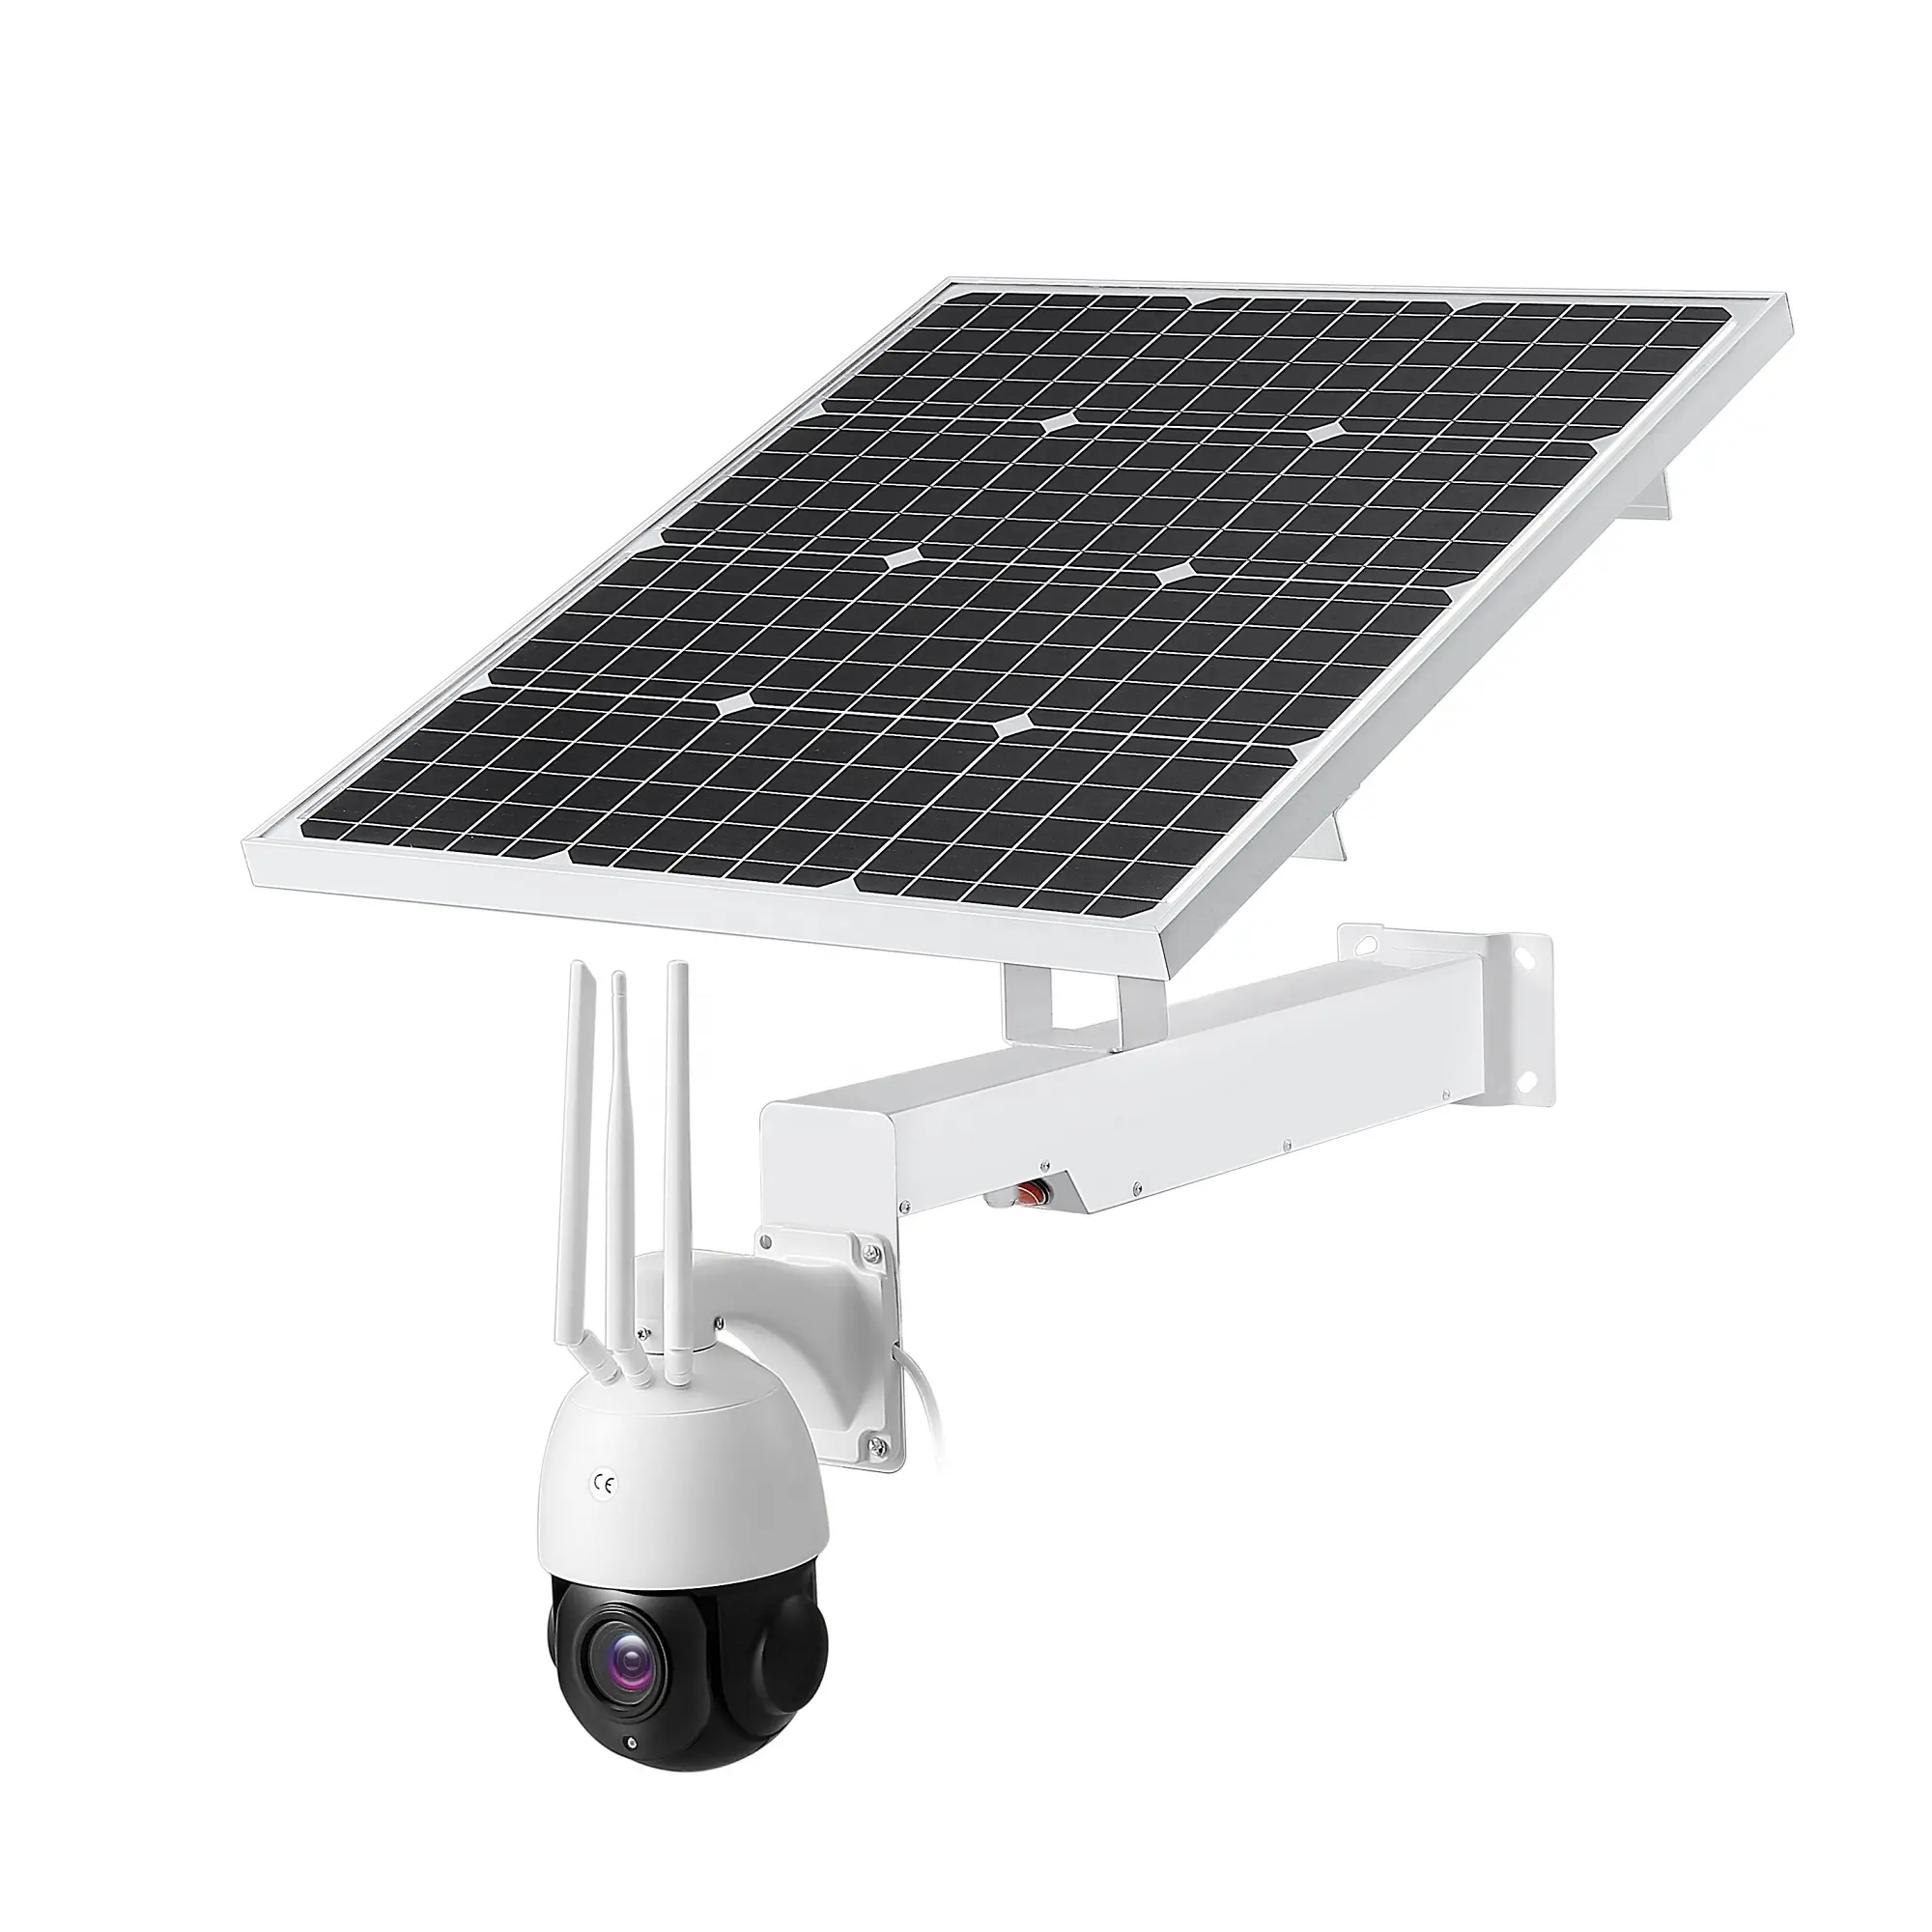 Caméra de surveillance extérieure solaire ptz ip 3g/4g lte, dispositif de sécurité sans fil, avec emplacement pour carte sim et panneau solaire